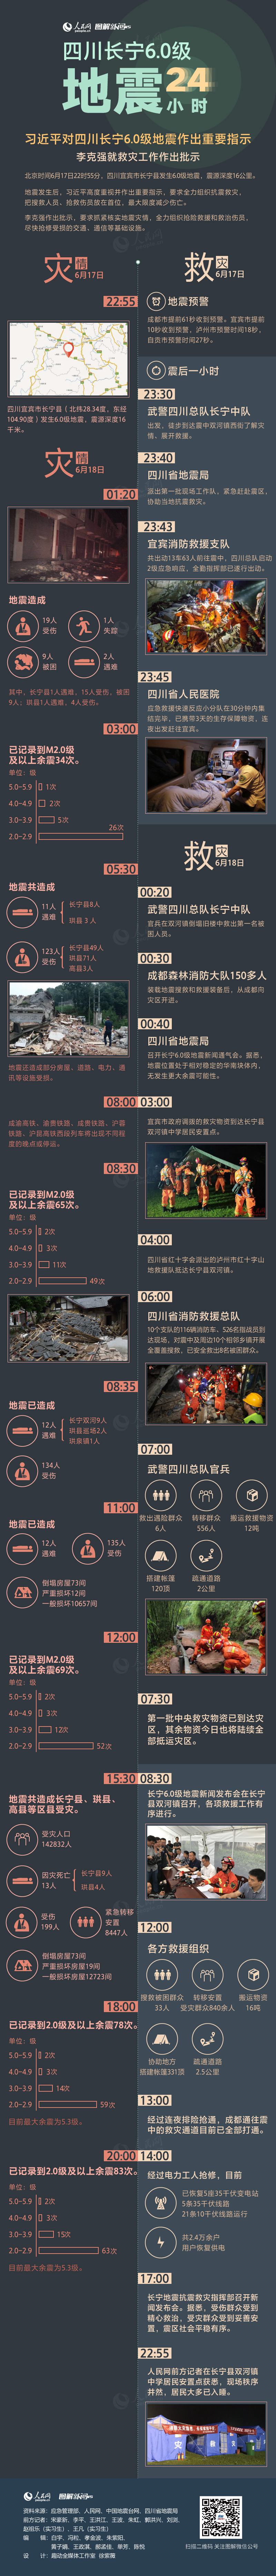 四川长宁6.0级地震24小时